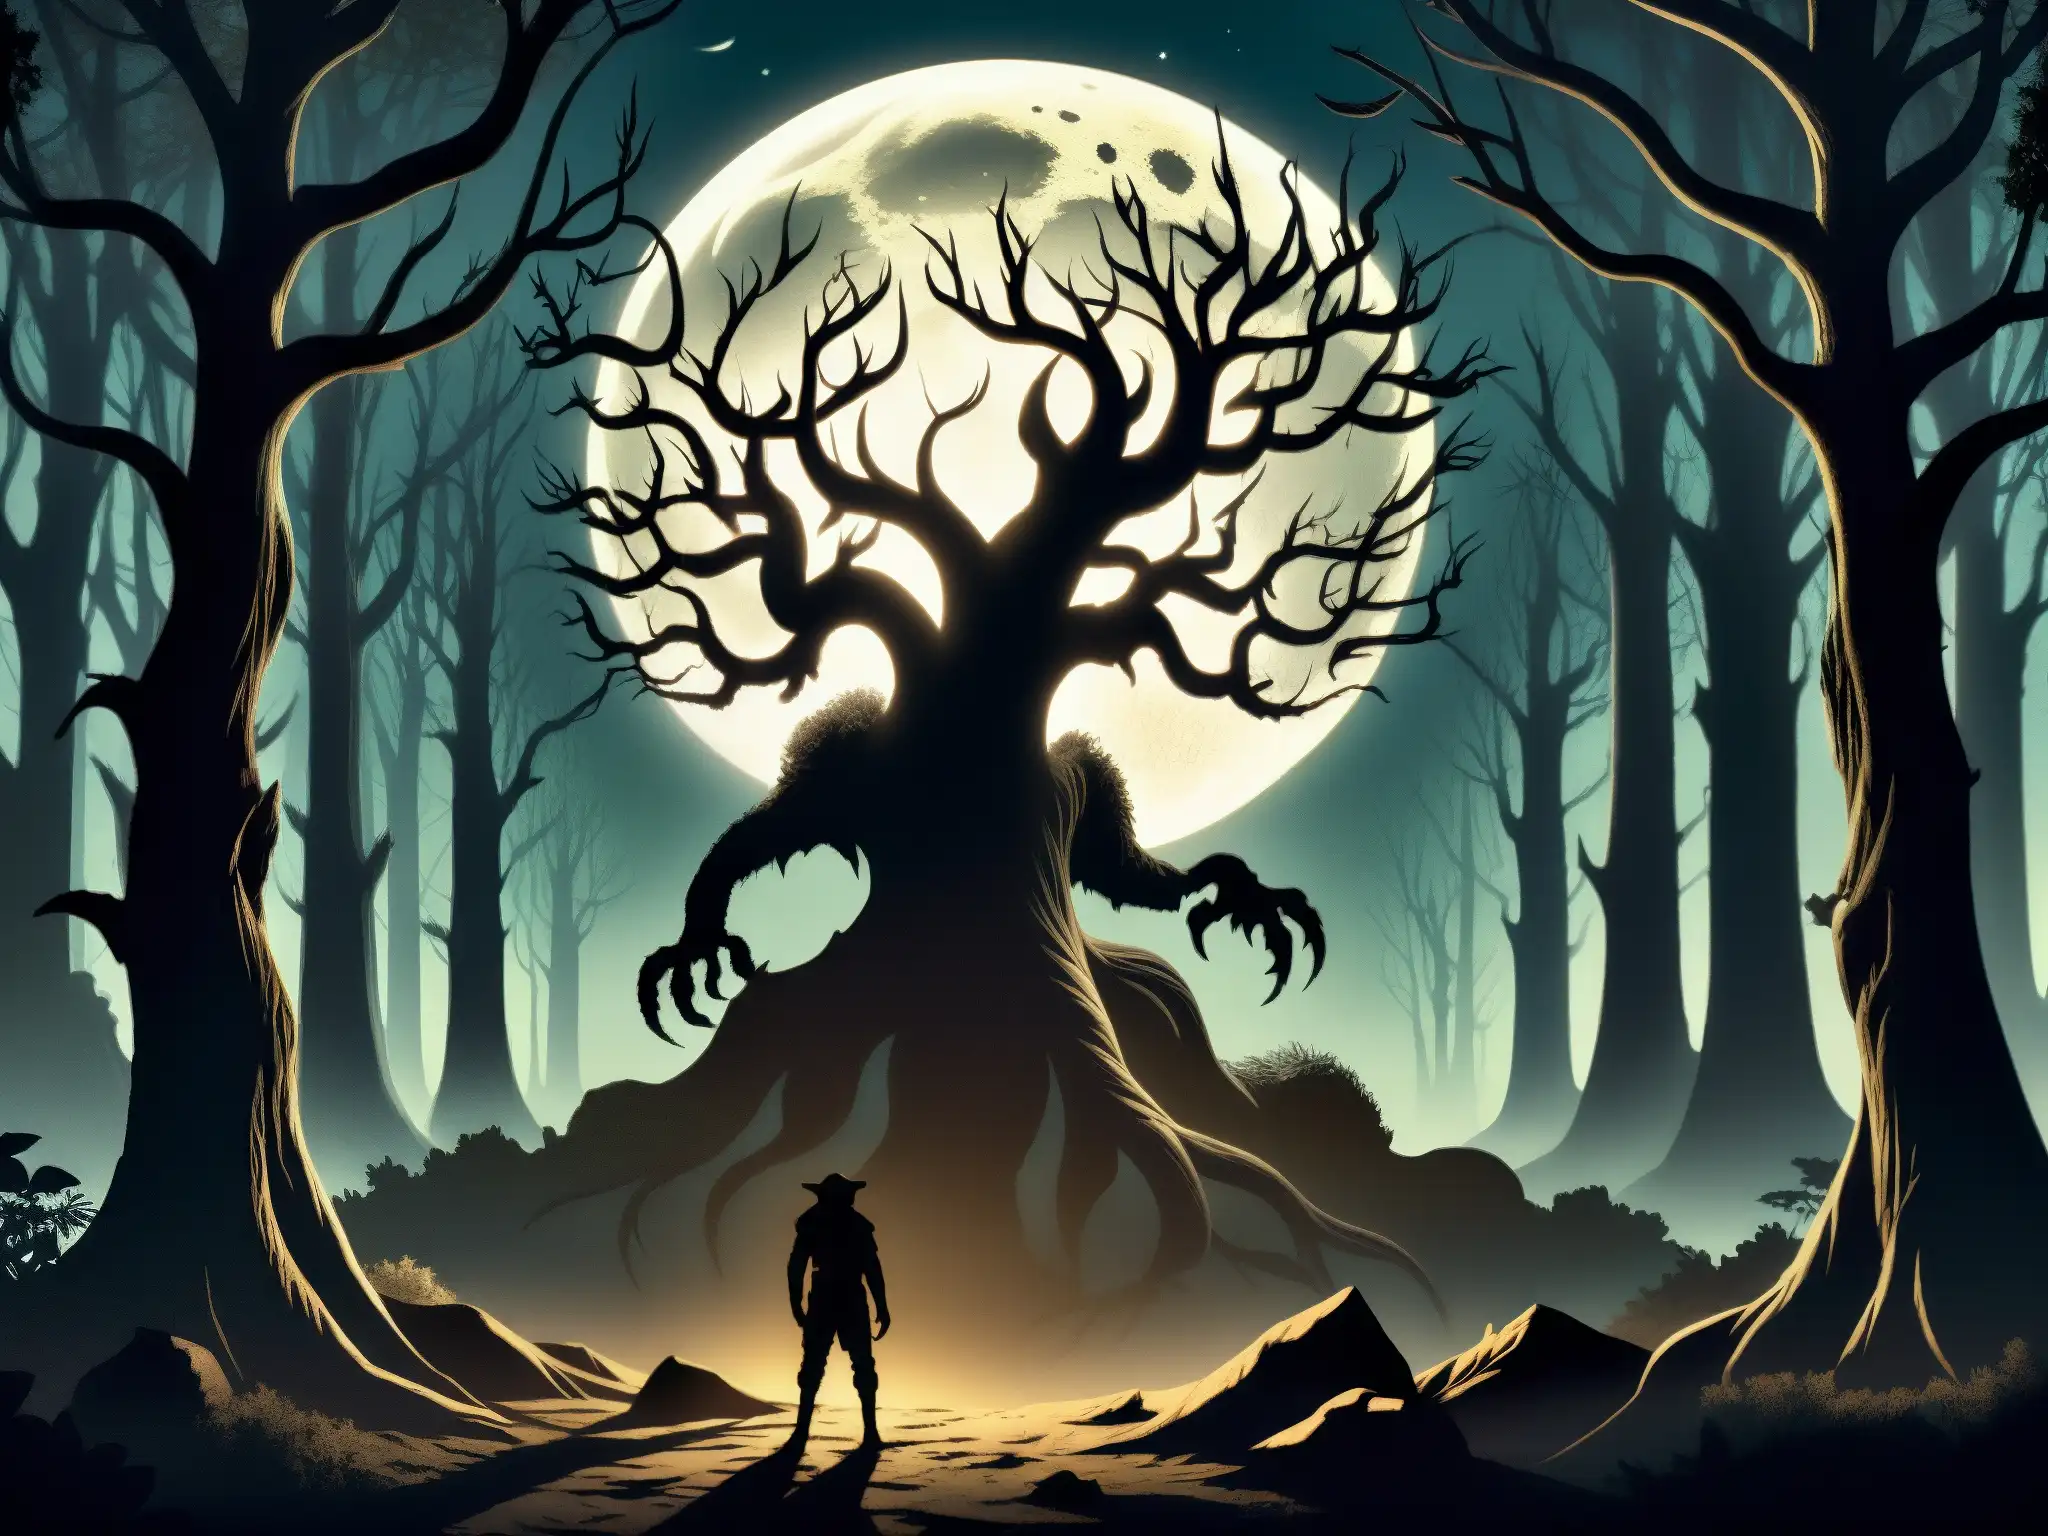 Un bosque iluminado por la luna donde se distingue una misteriosa silueta con ojos brillantes y garras afiladas, el legendario Chupacabra